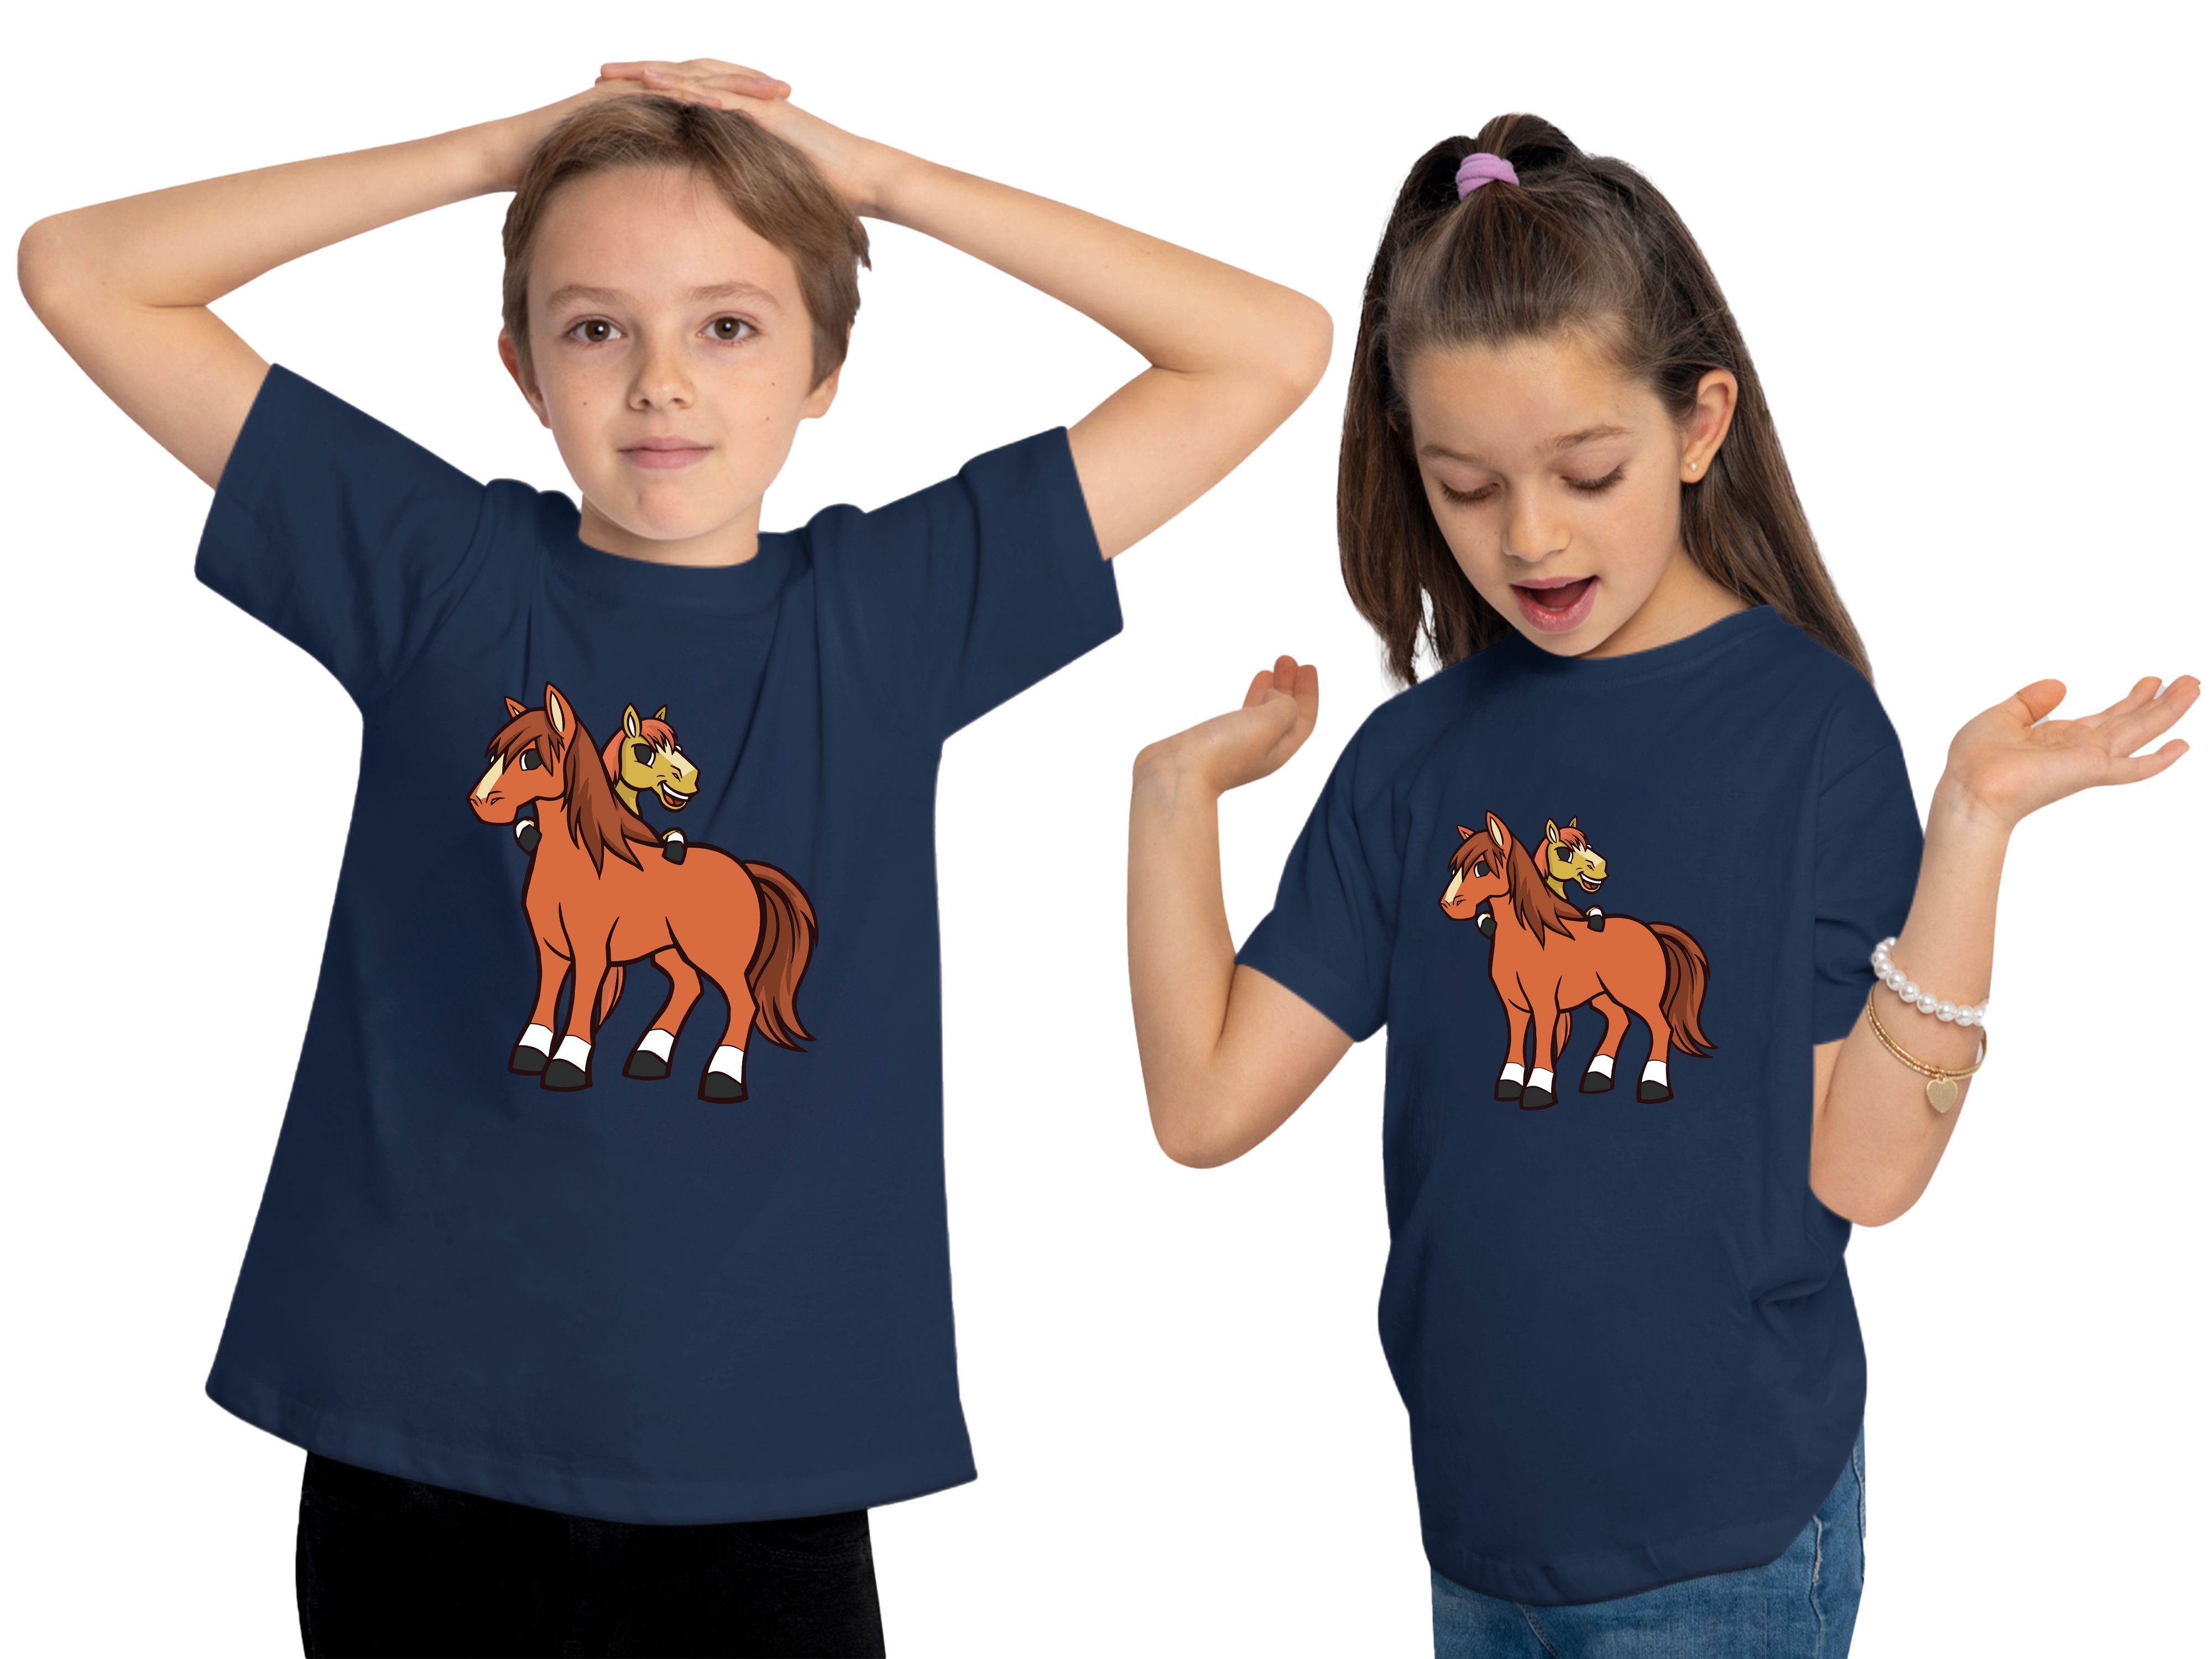 MyDesign24 navy 2 Aufdruck, bedruckt Shirt Kinder - Pferde Print mit i251 blau cartoon Baumwollshirt Pferde T-Shirt